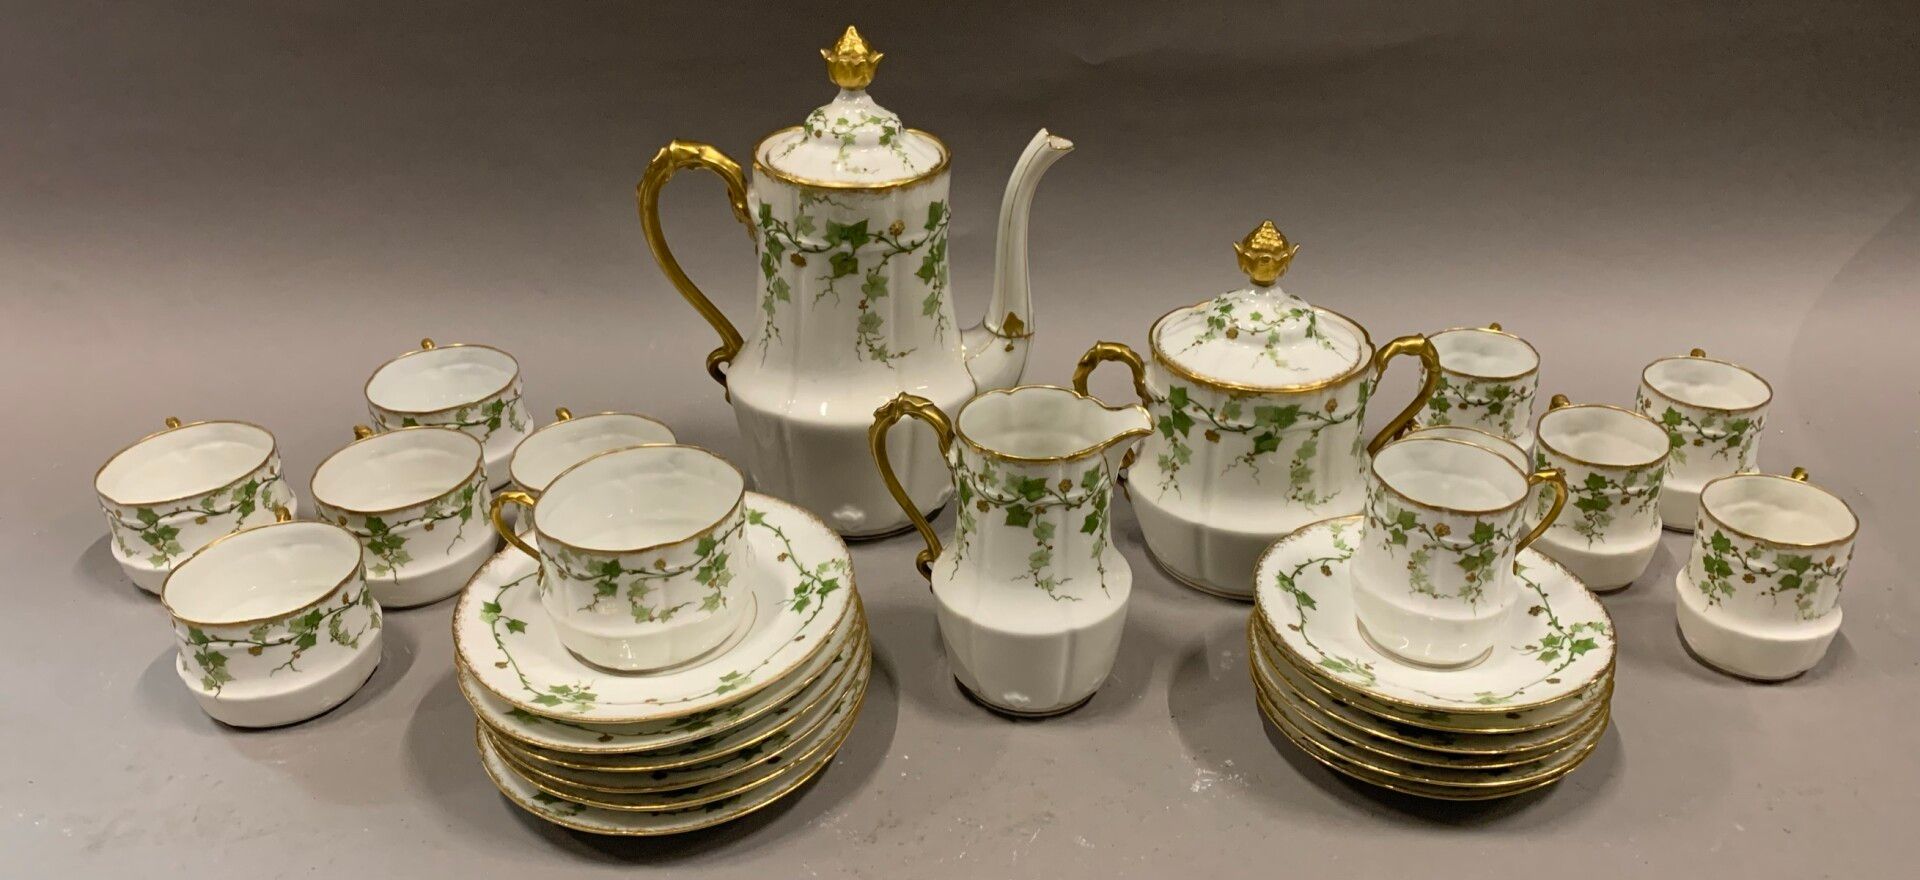 Null Servizio da tè e caffè in porcellana con decorazione di edera.

Fine del 19&hellip;